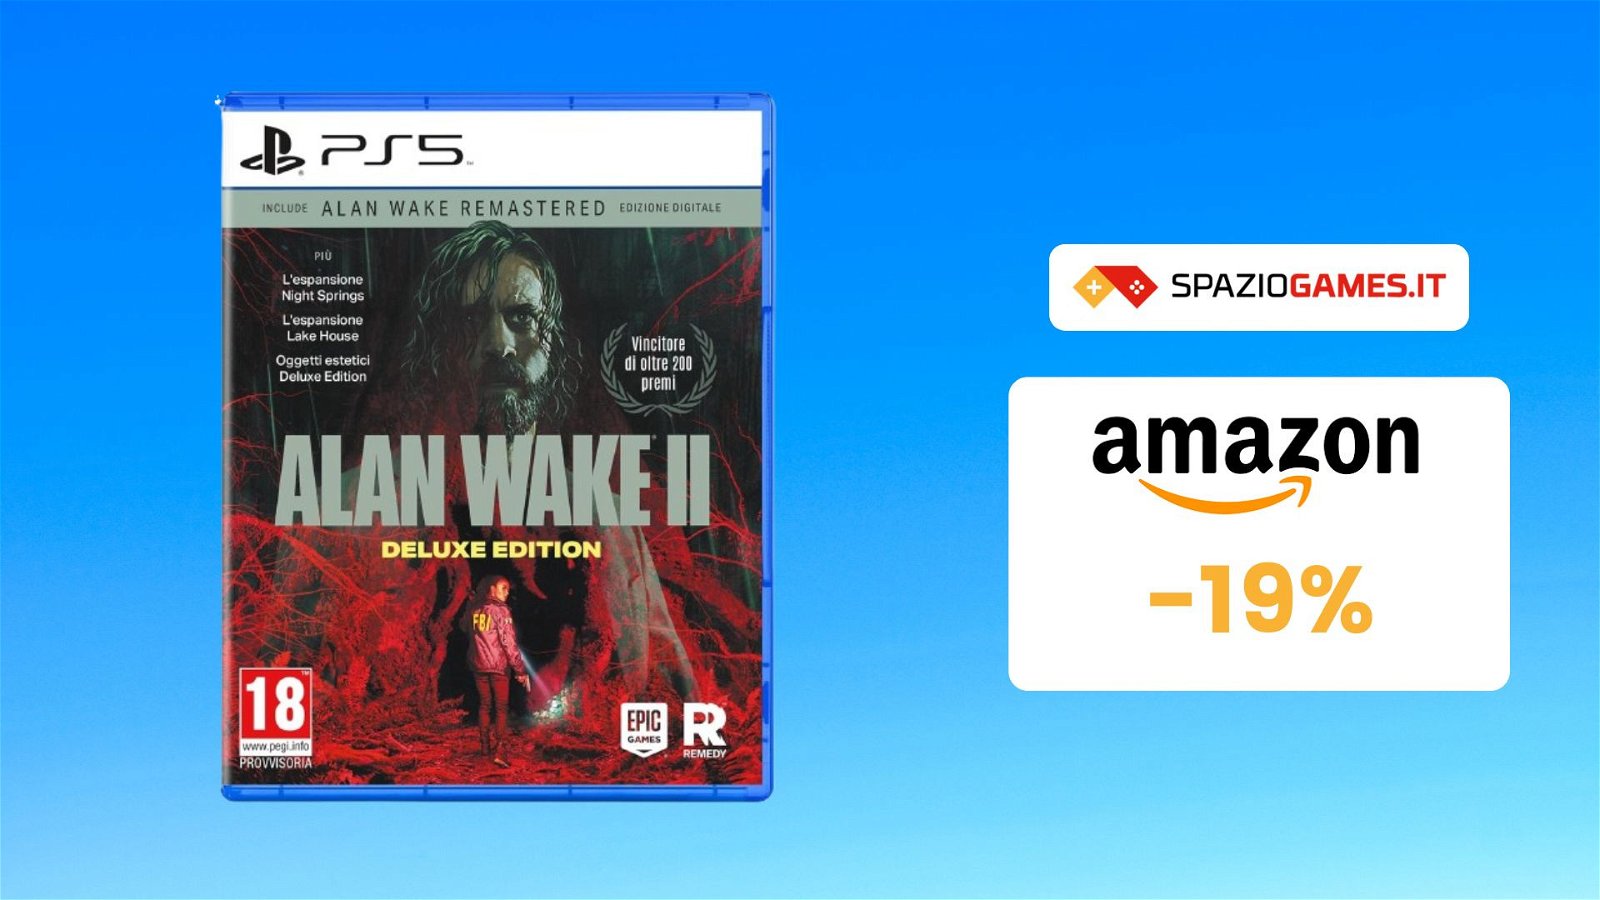 Alan Wake 2 Deluxe Edition: SCENDE il prezzo del preorder su Amazon! -19%